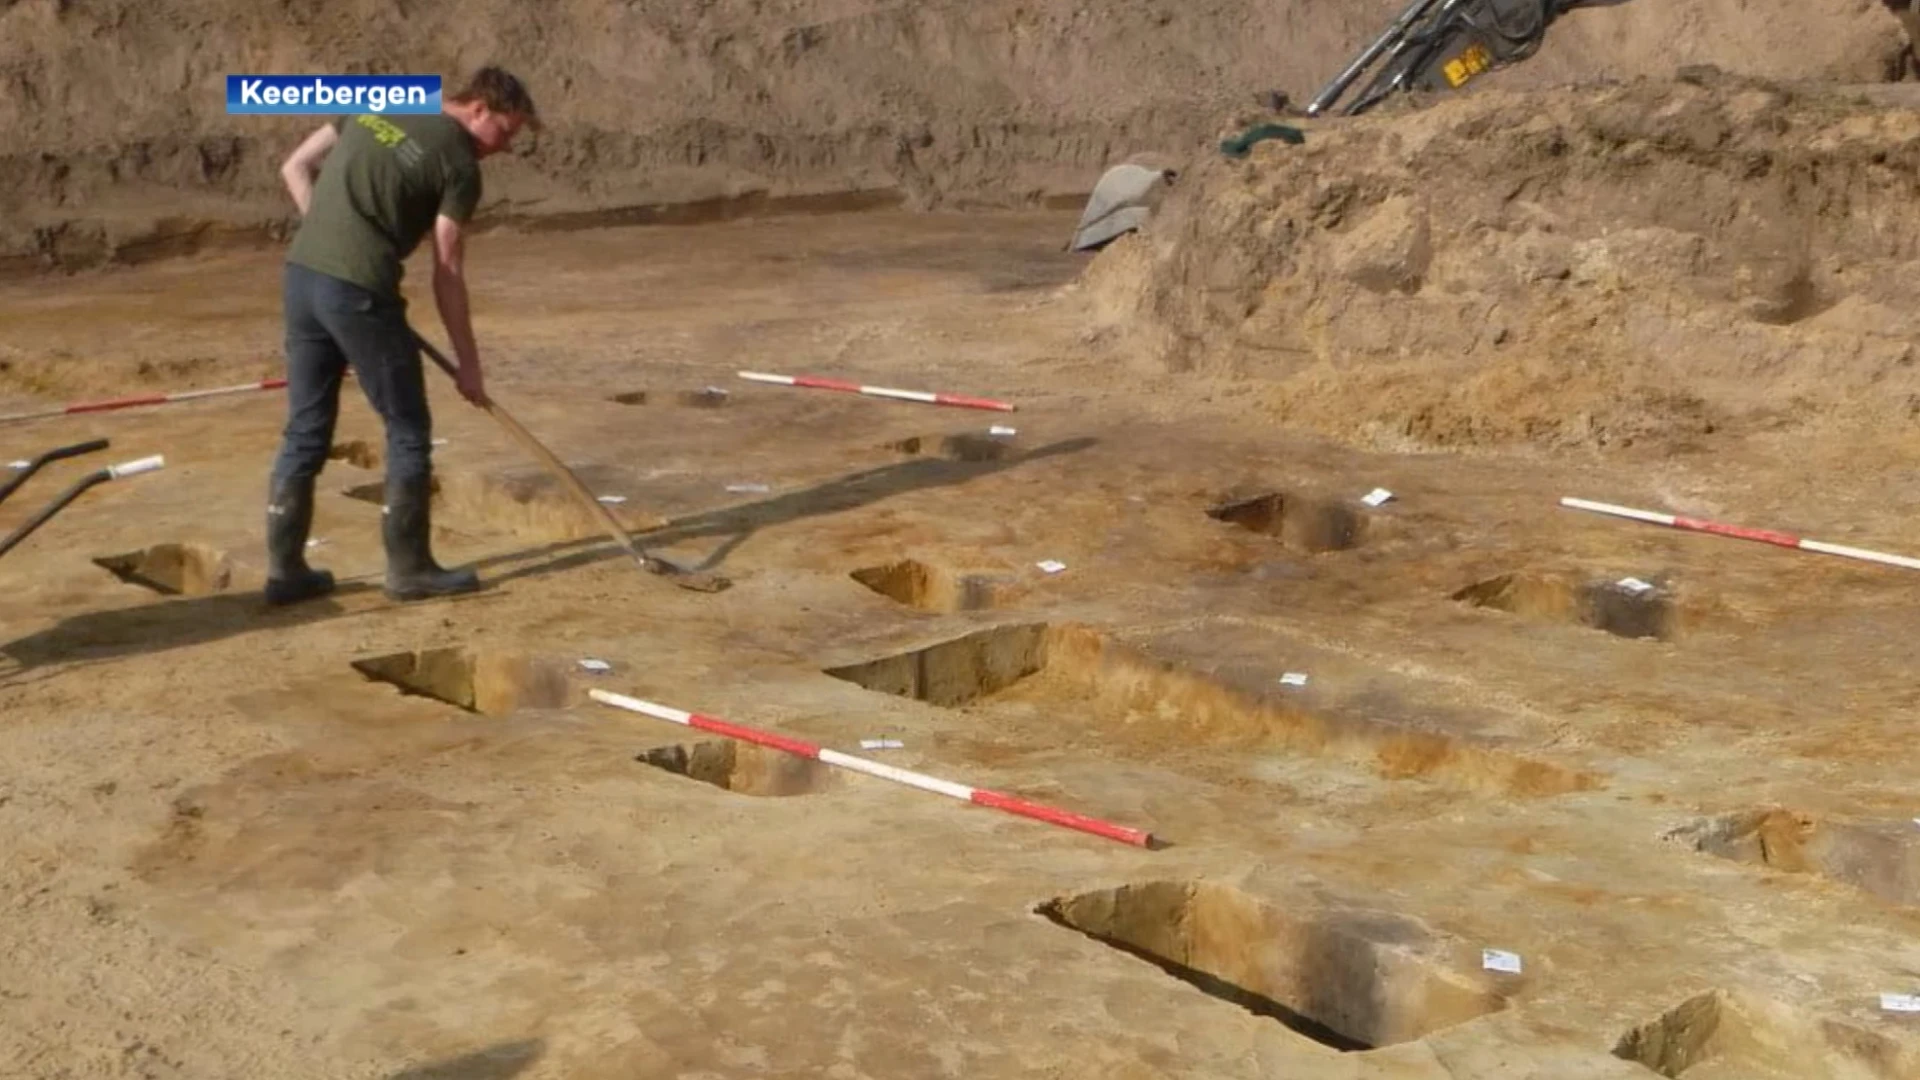 Archeologen vinden restanten van gebouwen uit de IJzertijd in Keerbergen